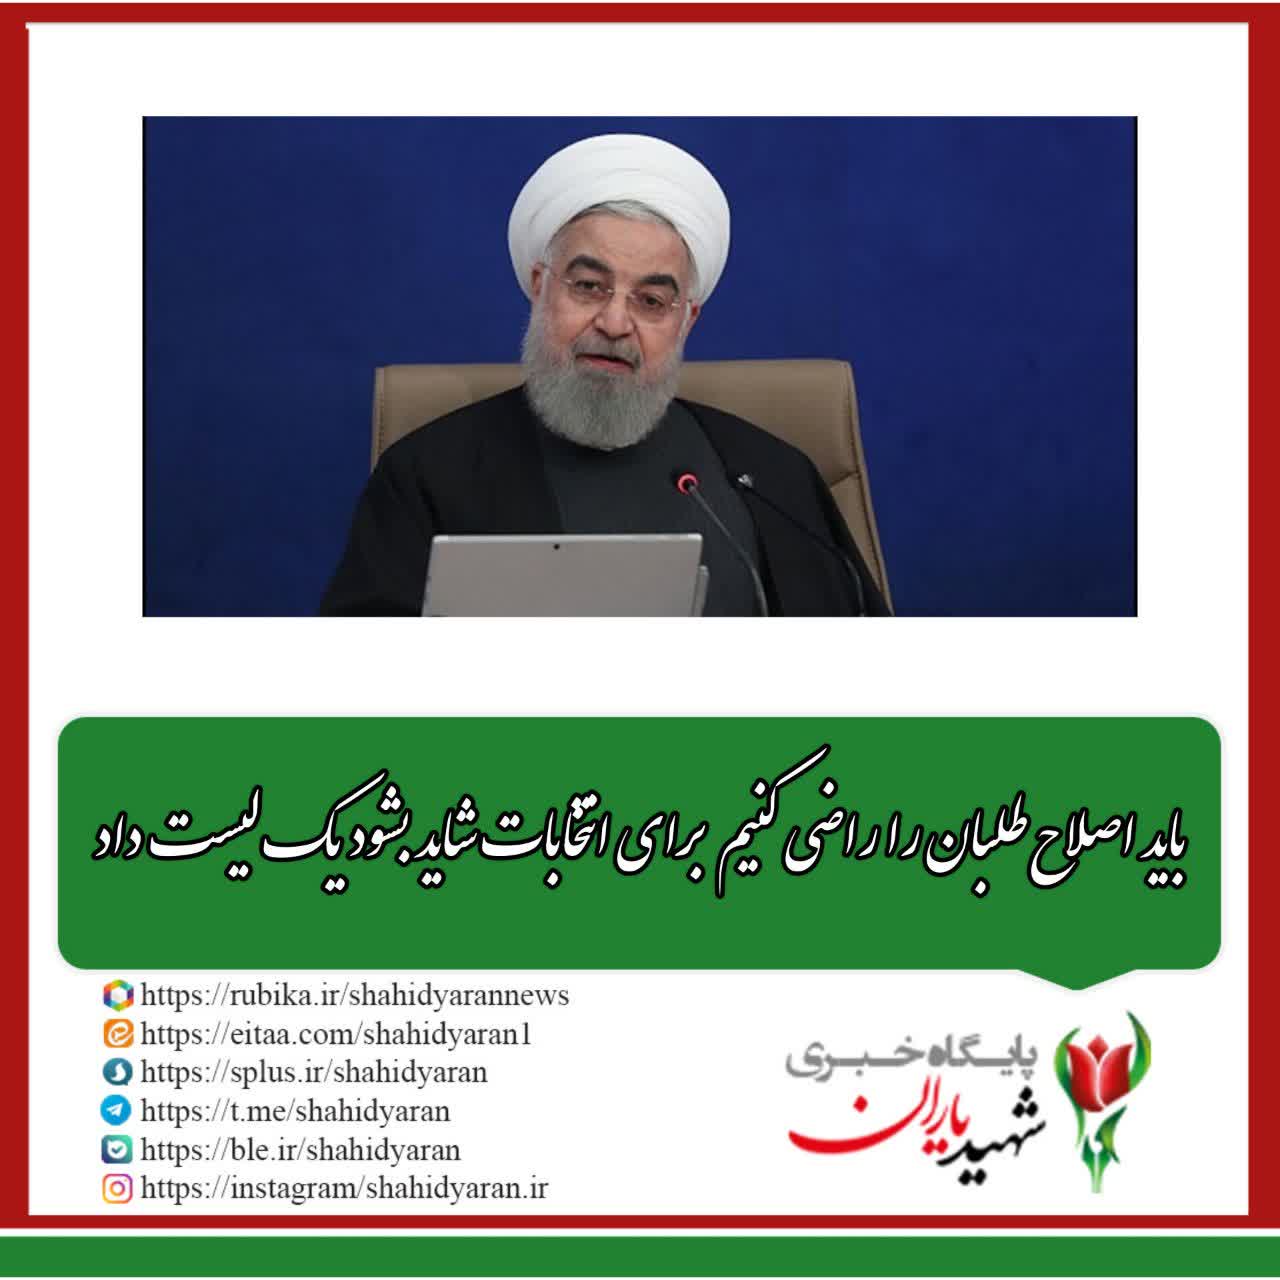 روحانی در جمع وزرای سابق: